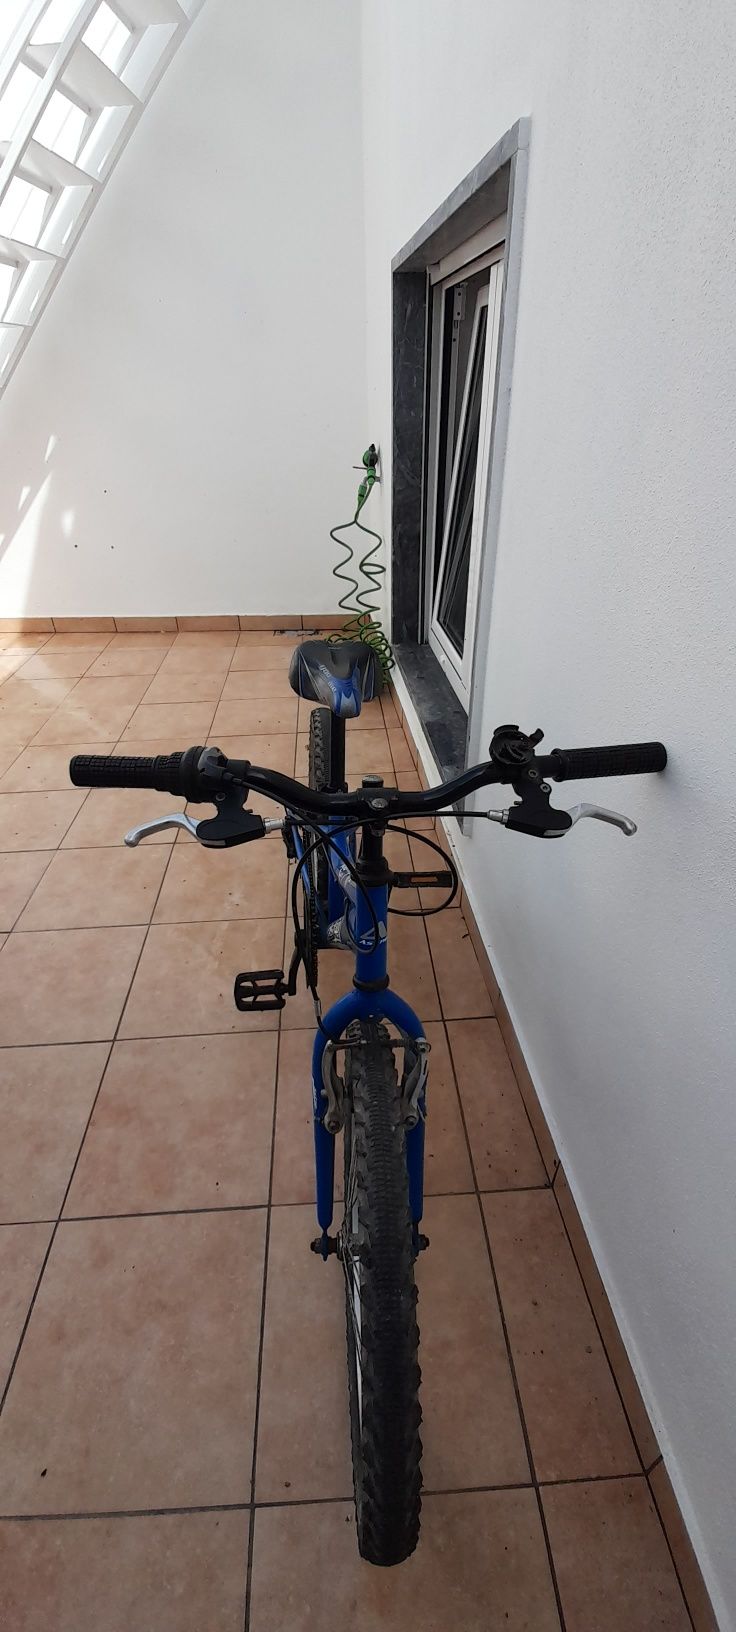 bicicleta astro criança roda 20